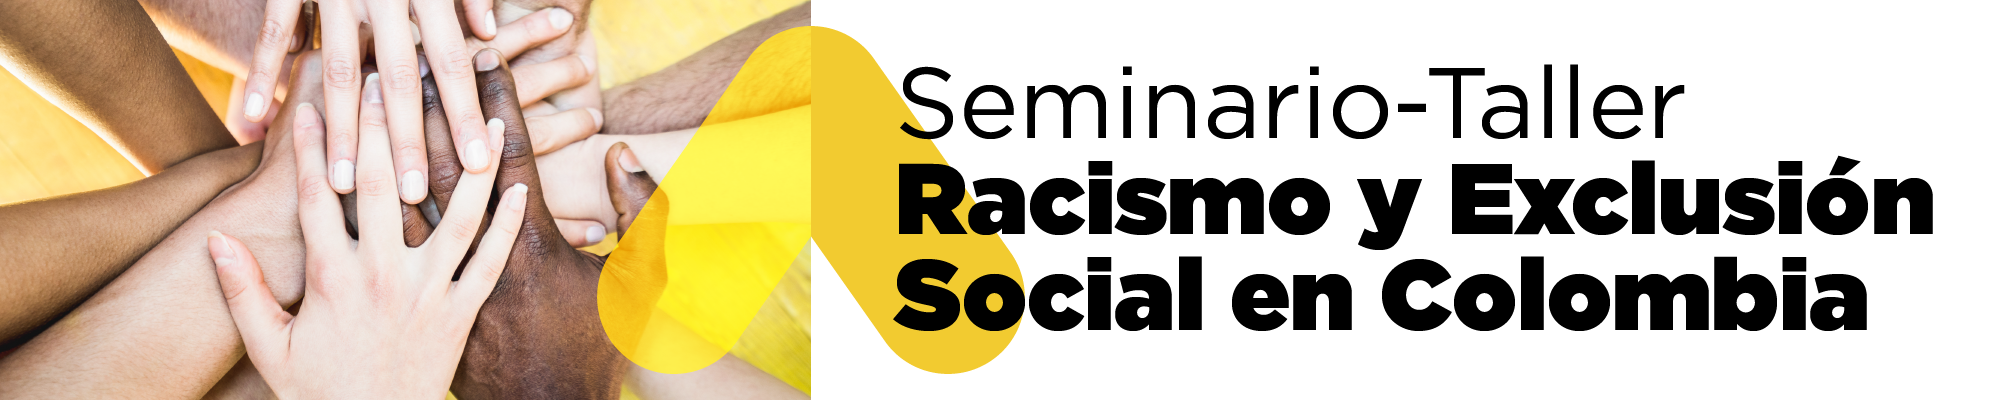 Seminario-Taller racismo y exclusión social en Colombia